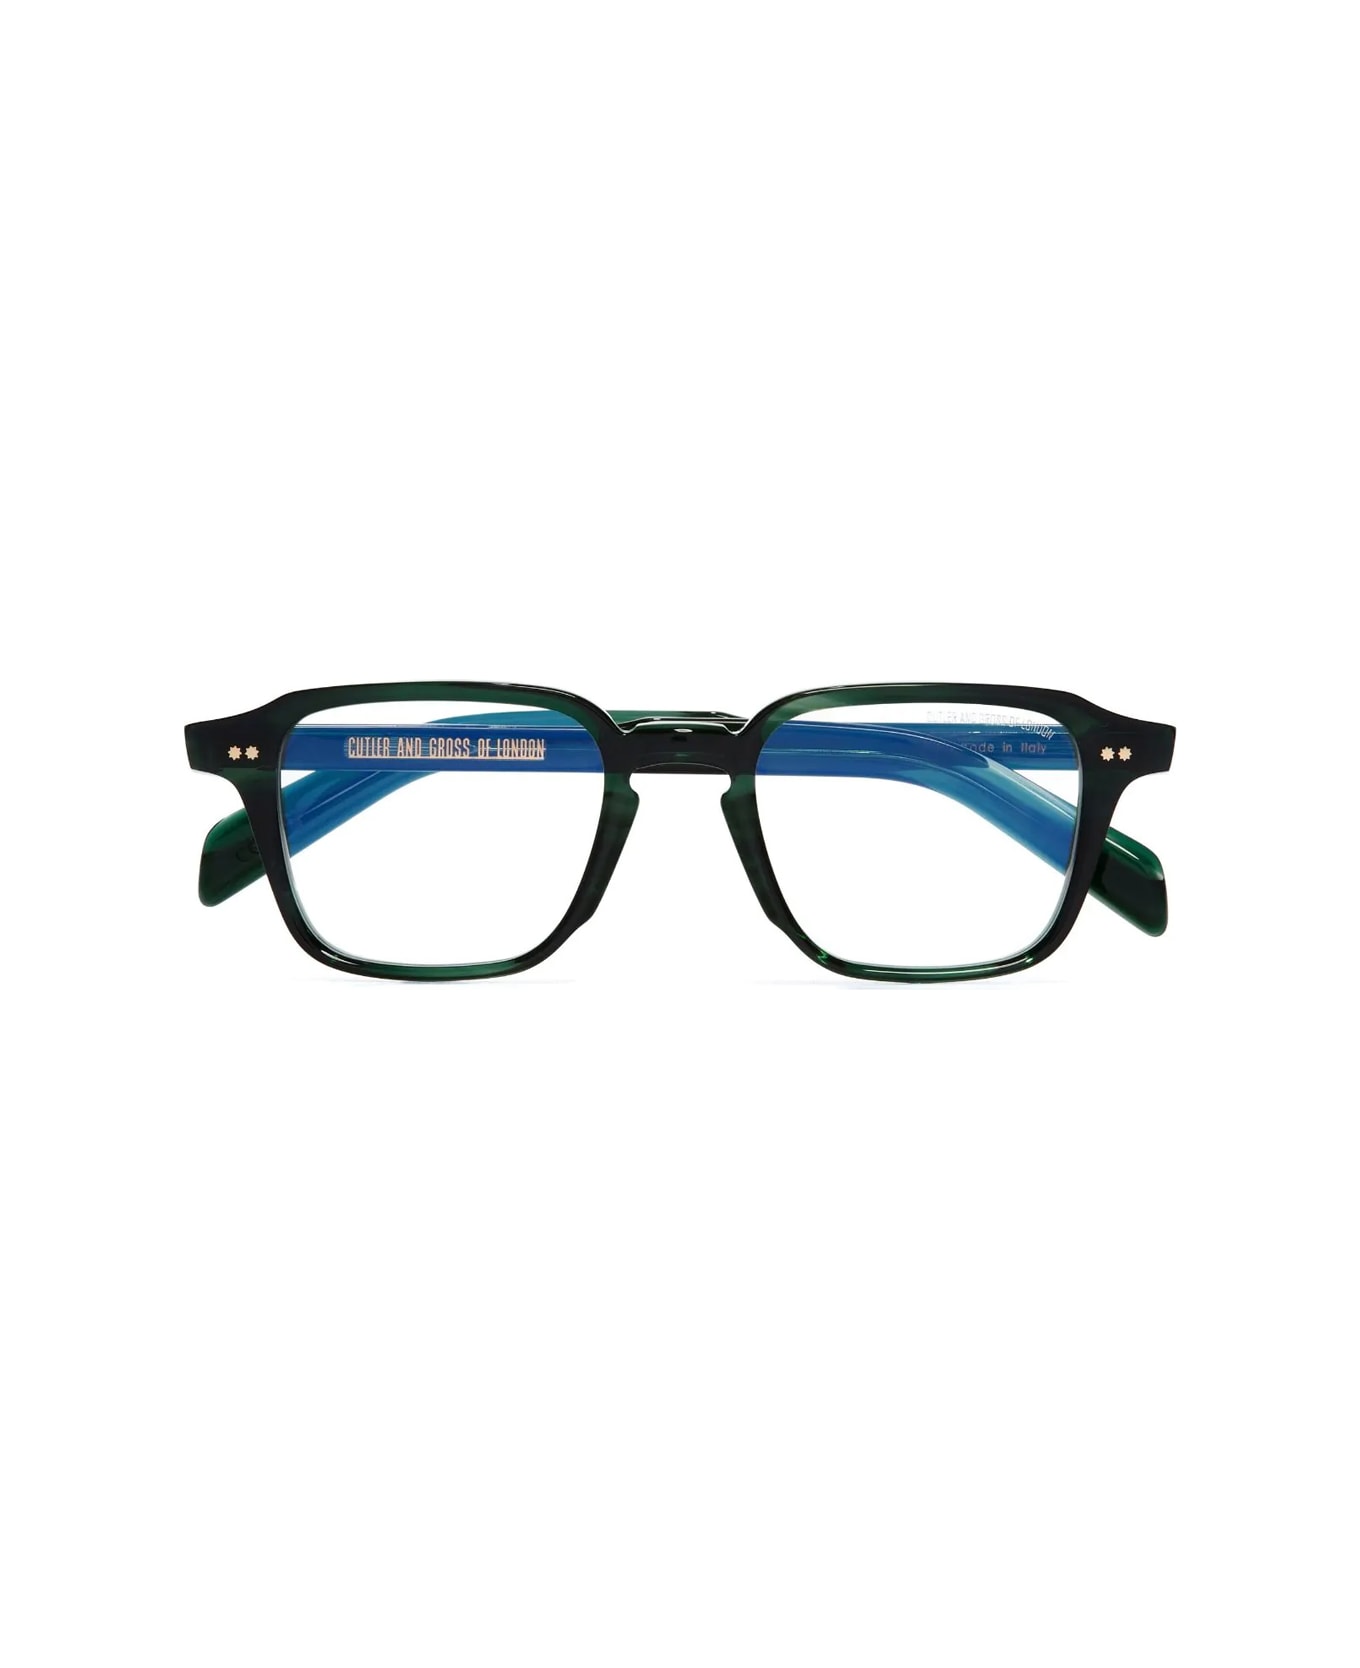 Cutler and Gross Gr07 03 Striped Dark Green Glasses - Verde